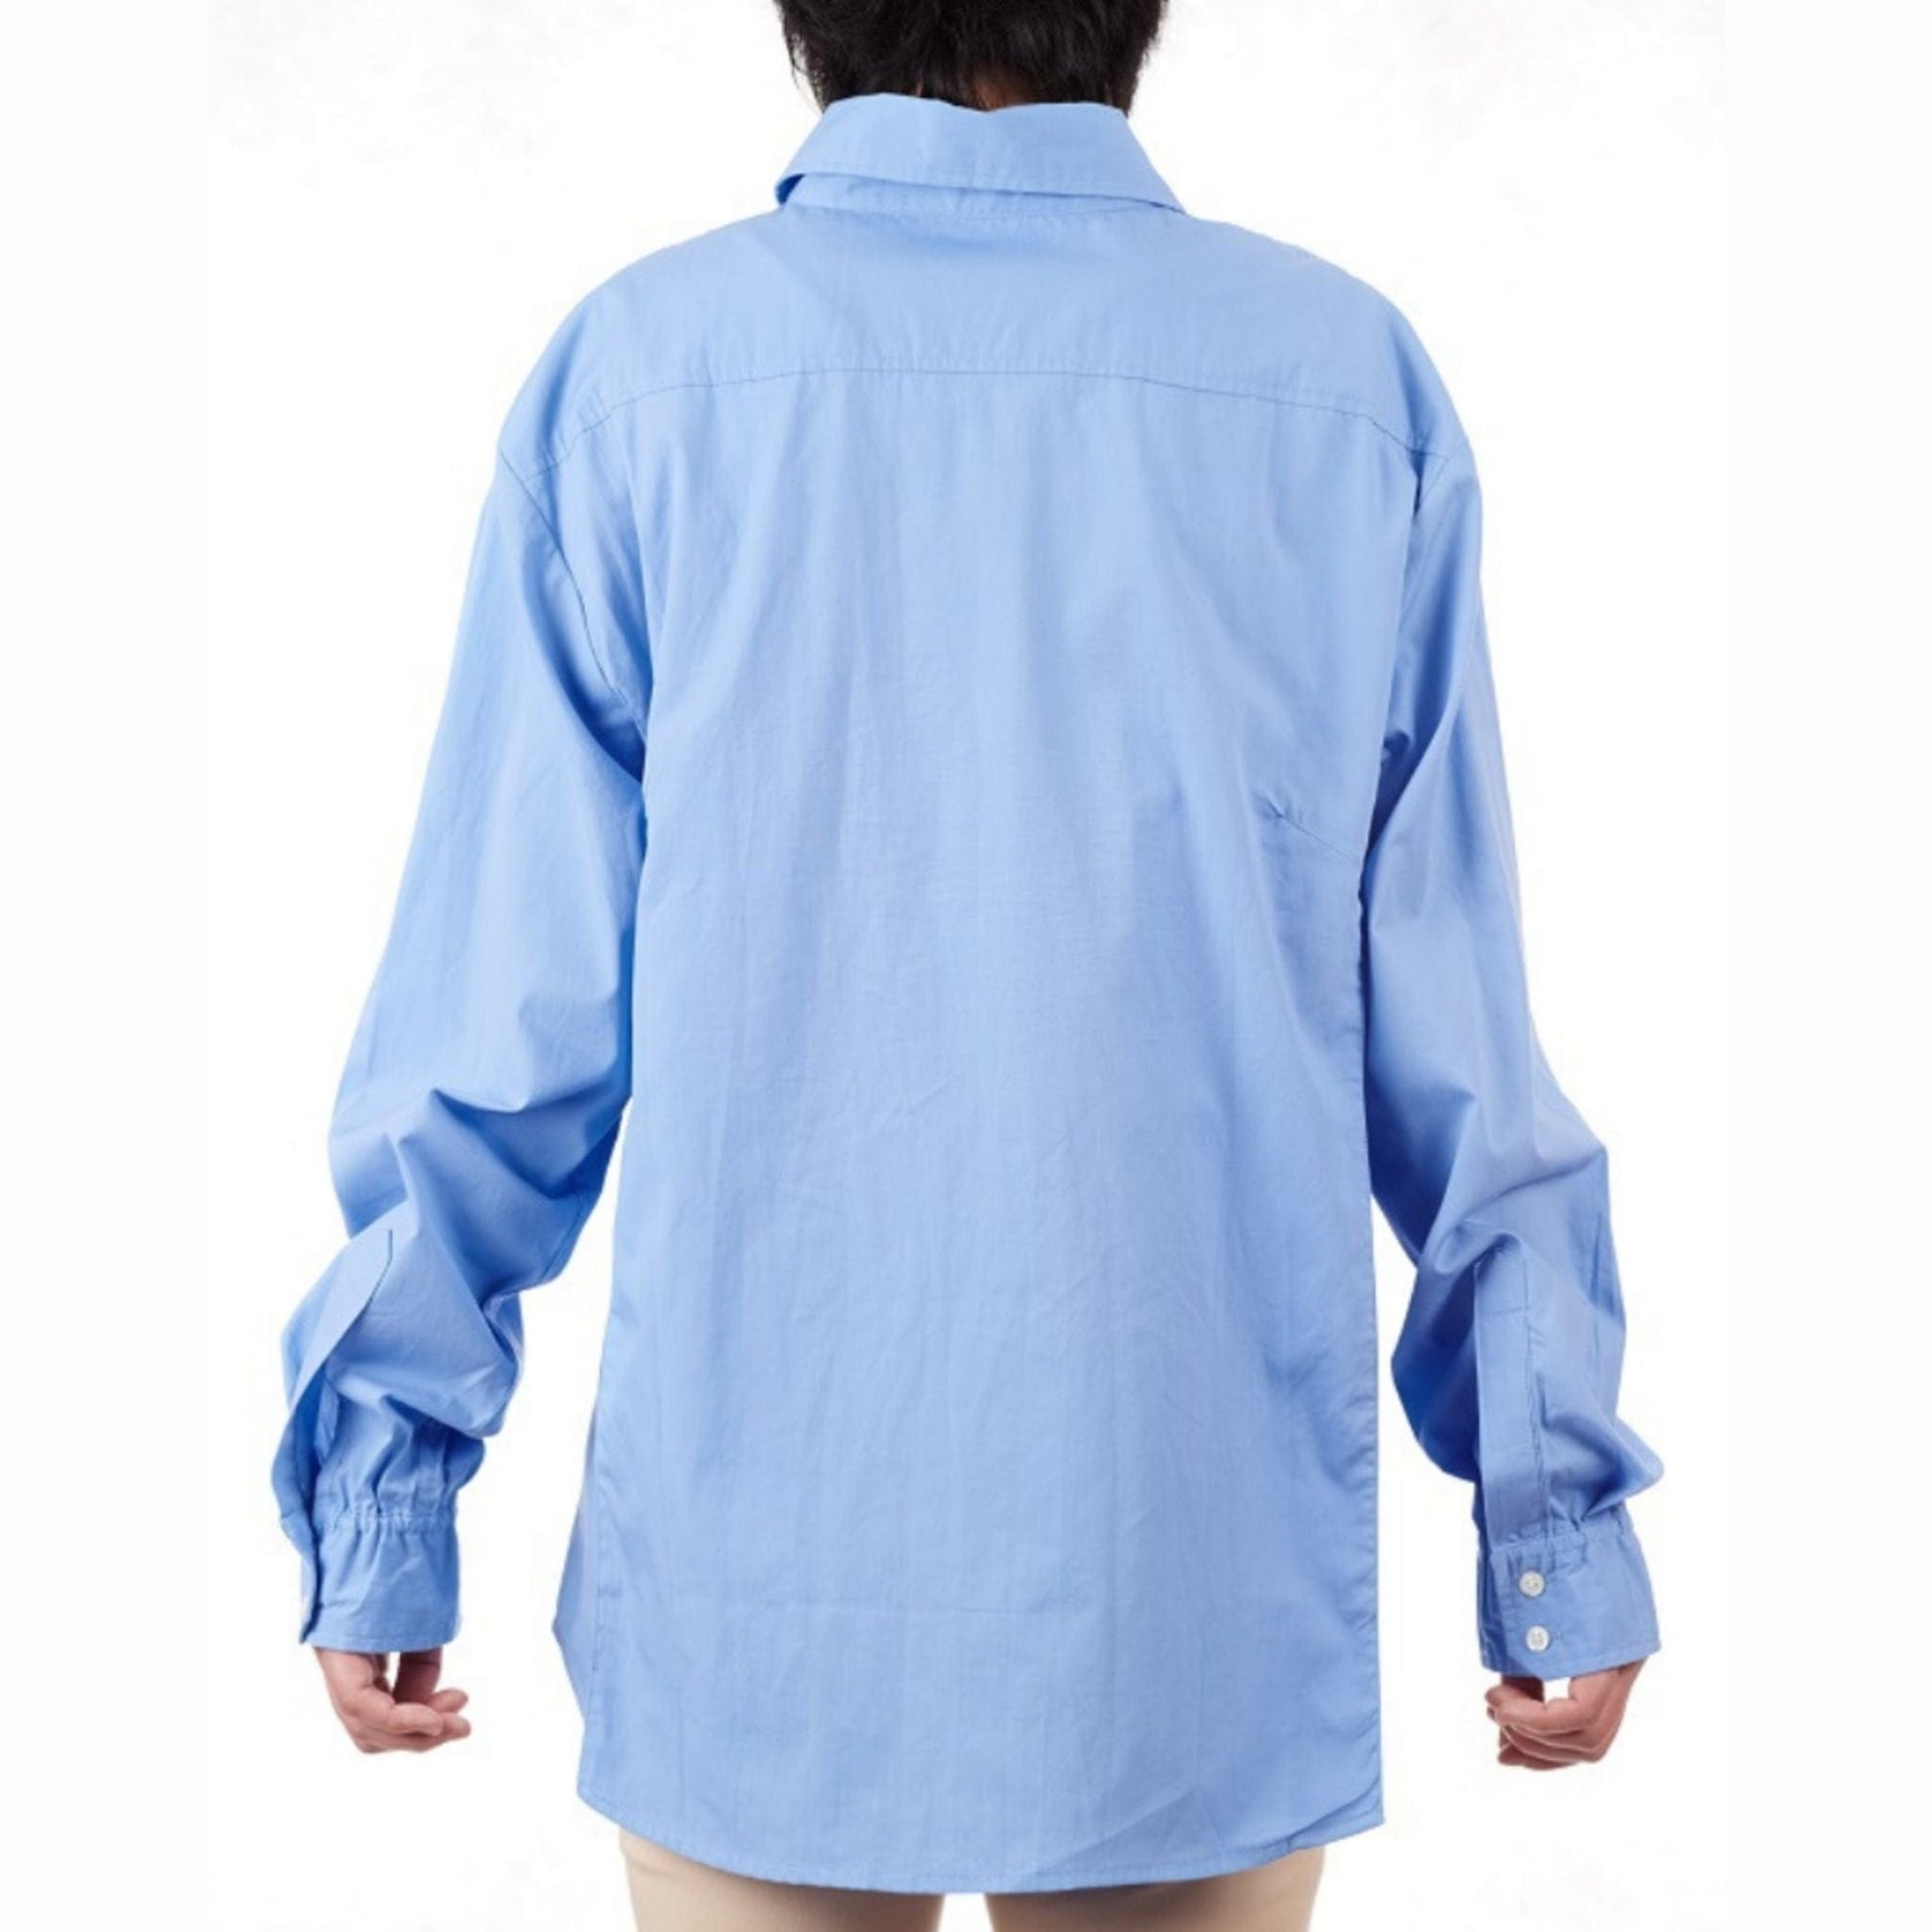 Mens Adaptive Shirt - Caring Clothing